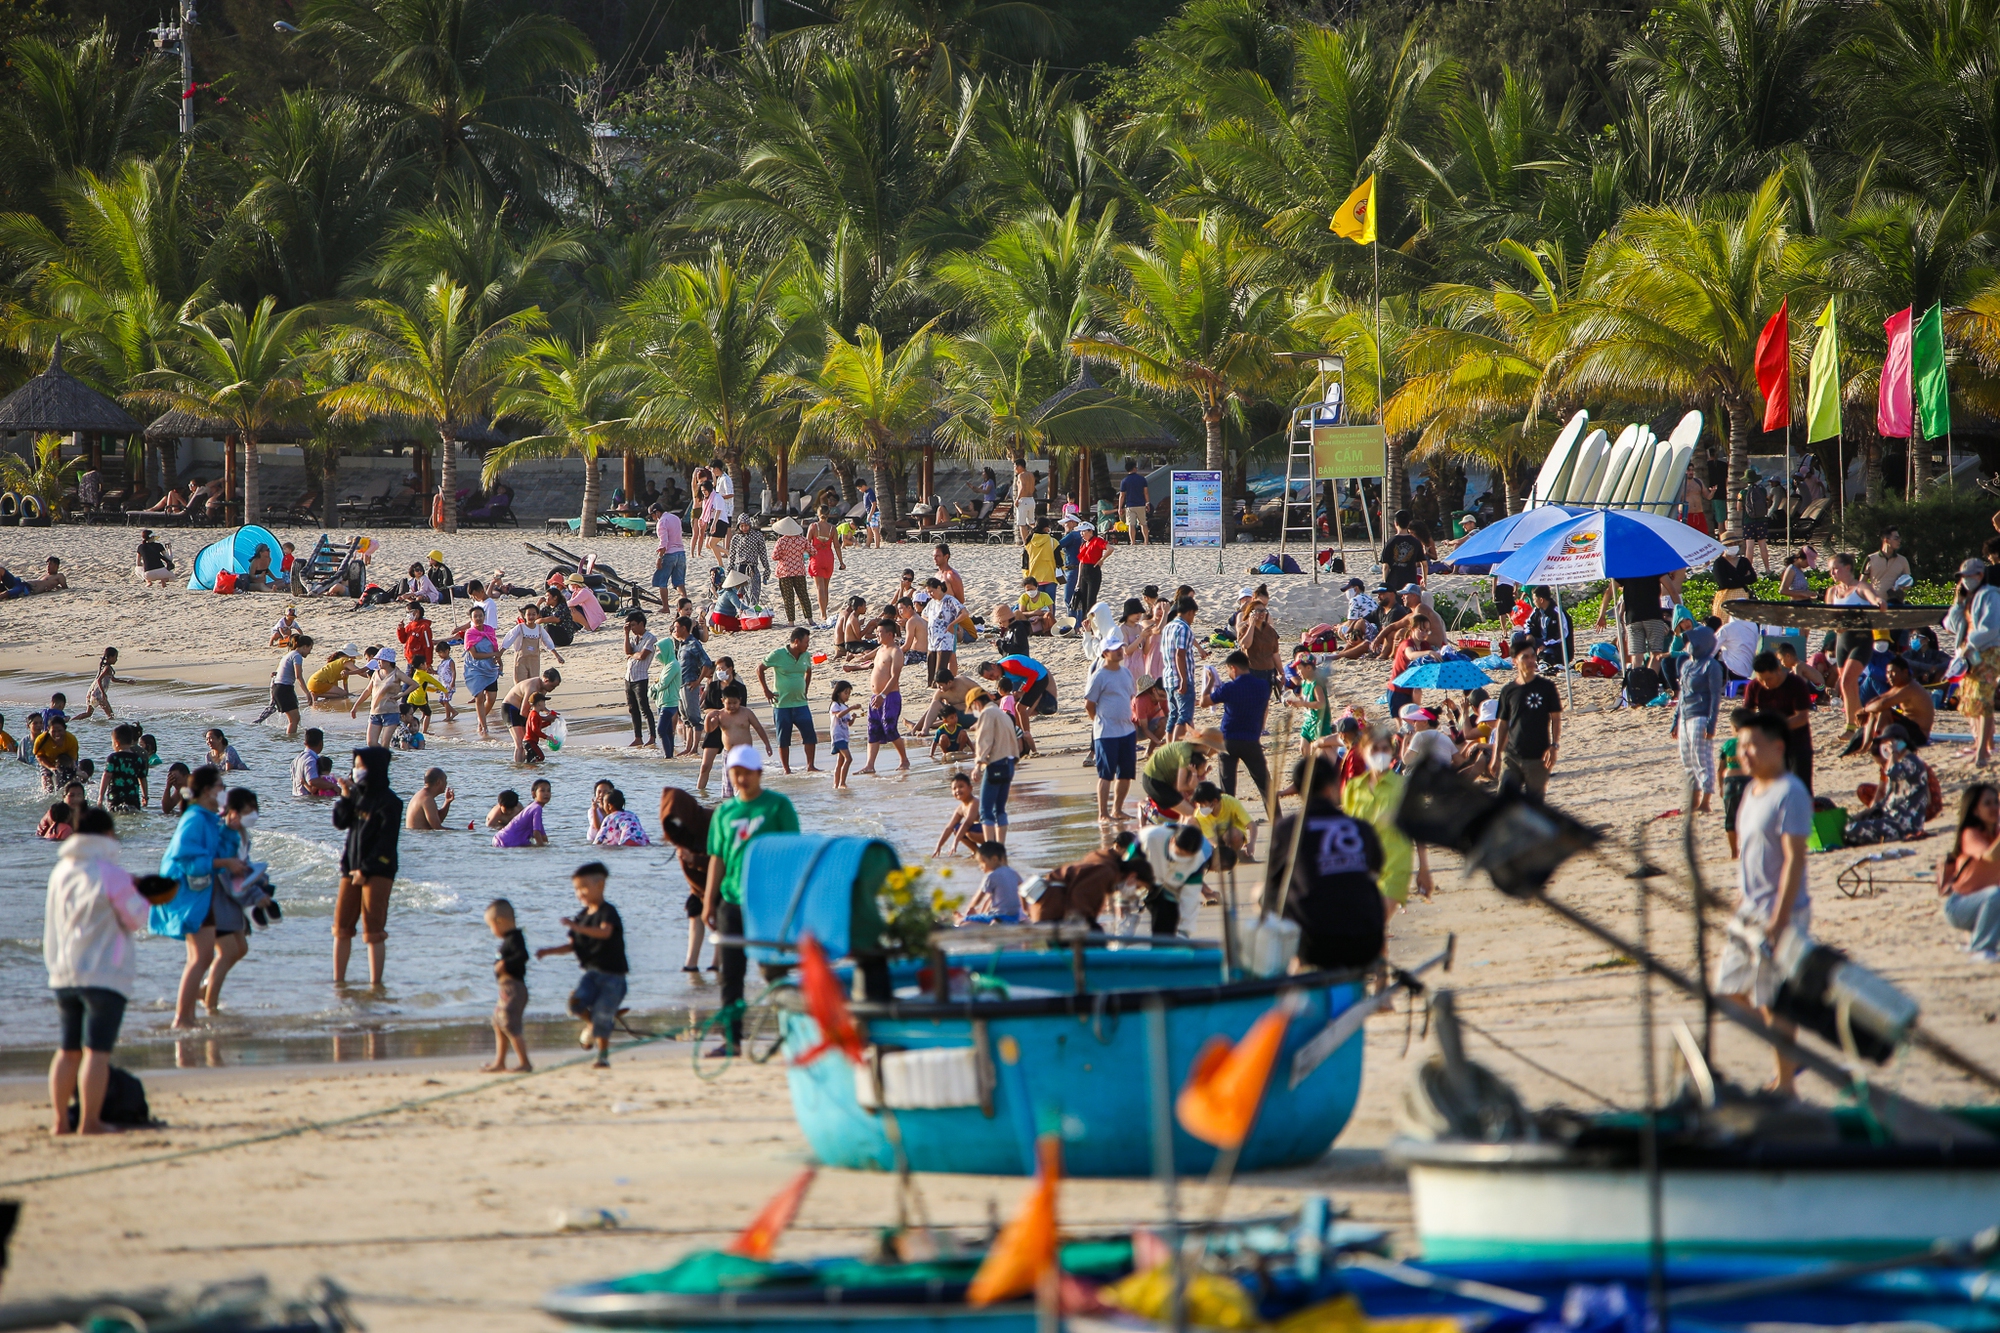 Bãi biển Phan Thiết đông đúc du khách vào mùng 2 Tết Quý Mão - Ảnh 1.